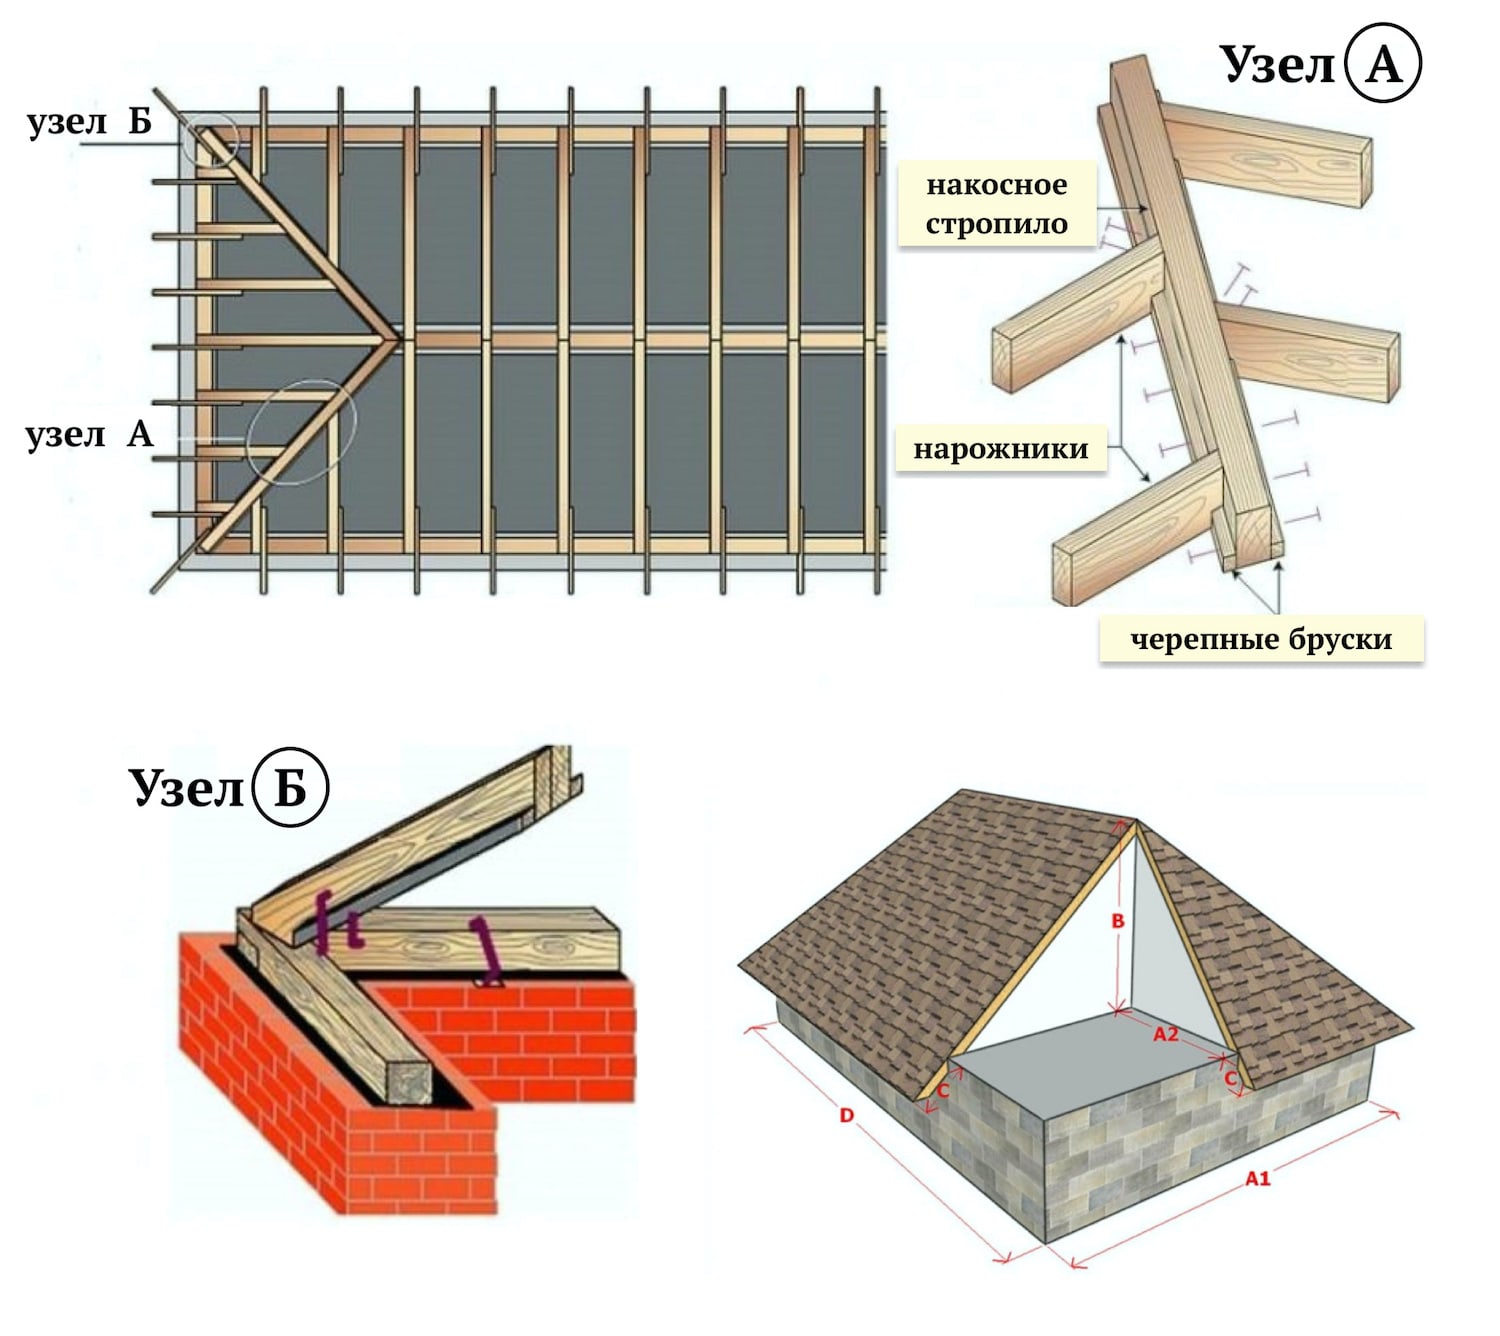 Вальмовая крыша – устройство стропильной системы, схема, монтаж